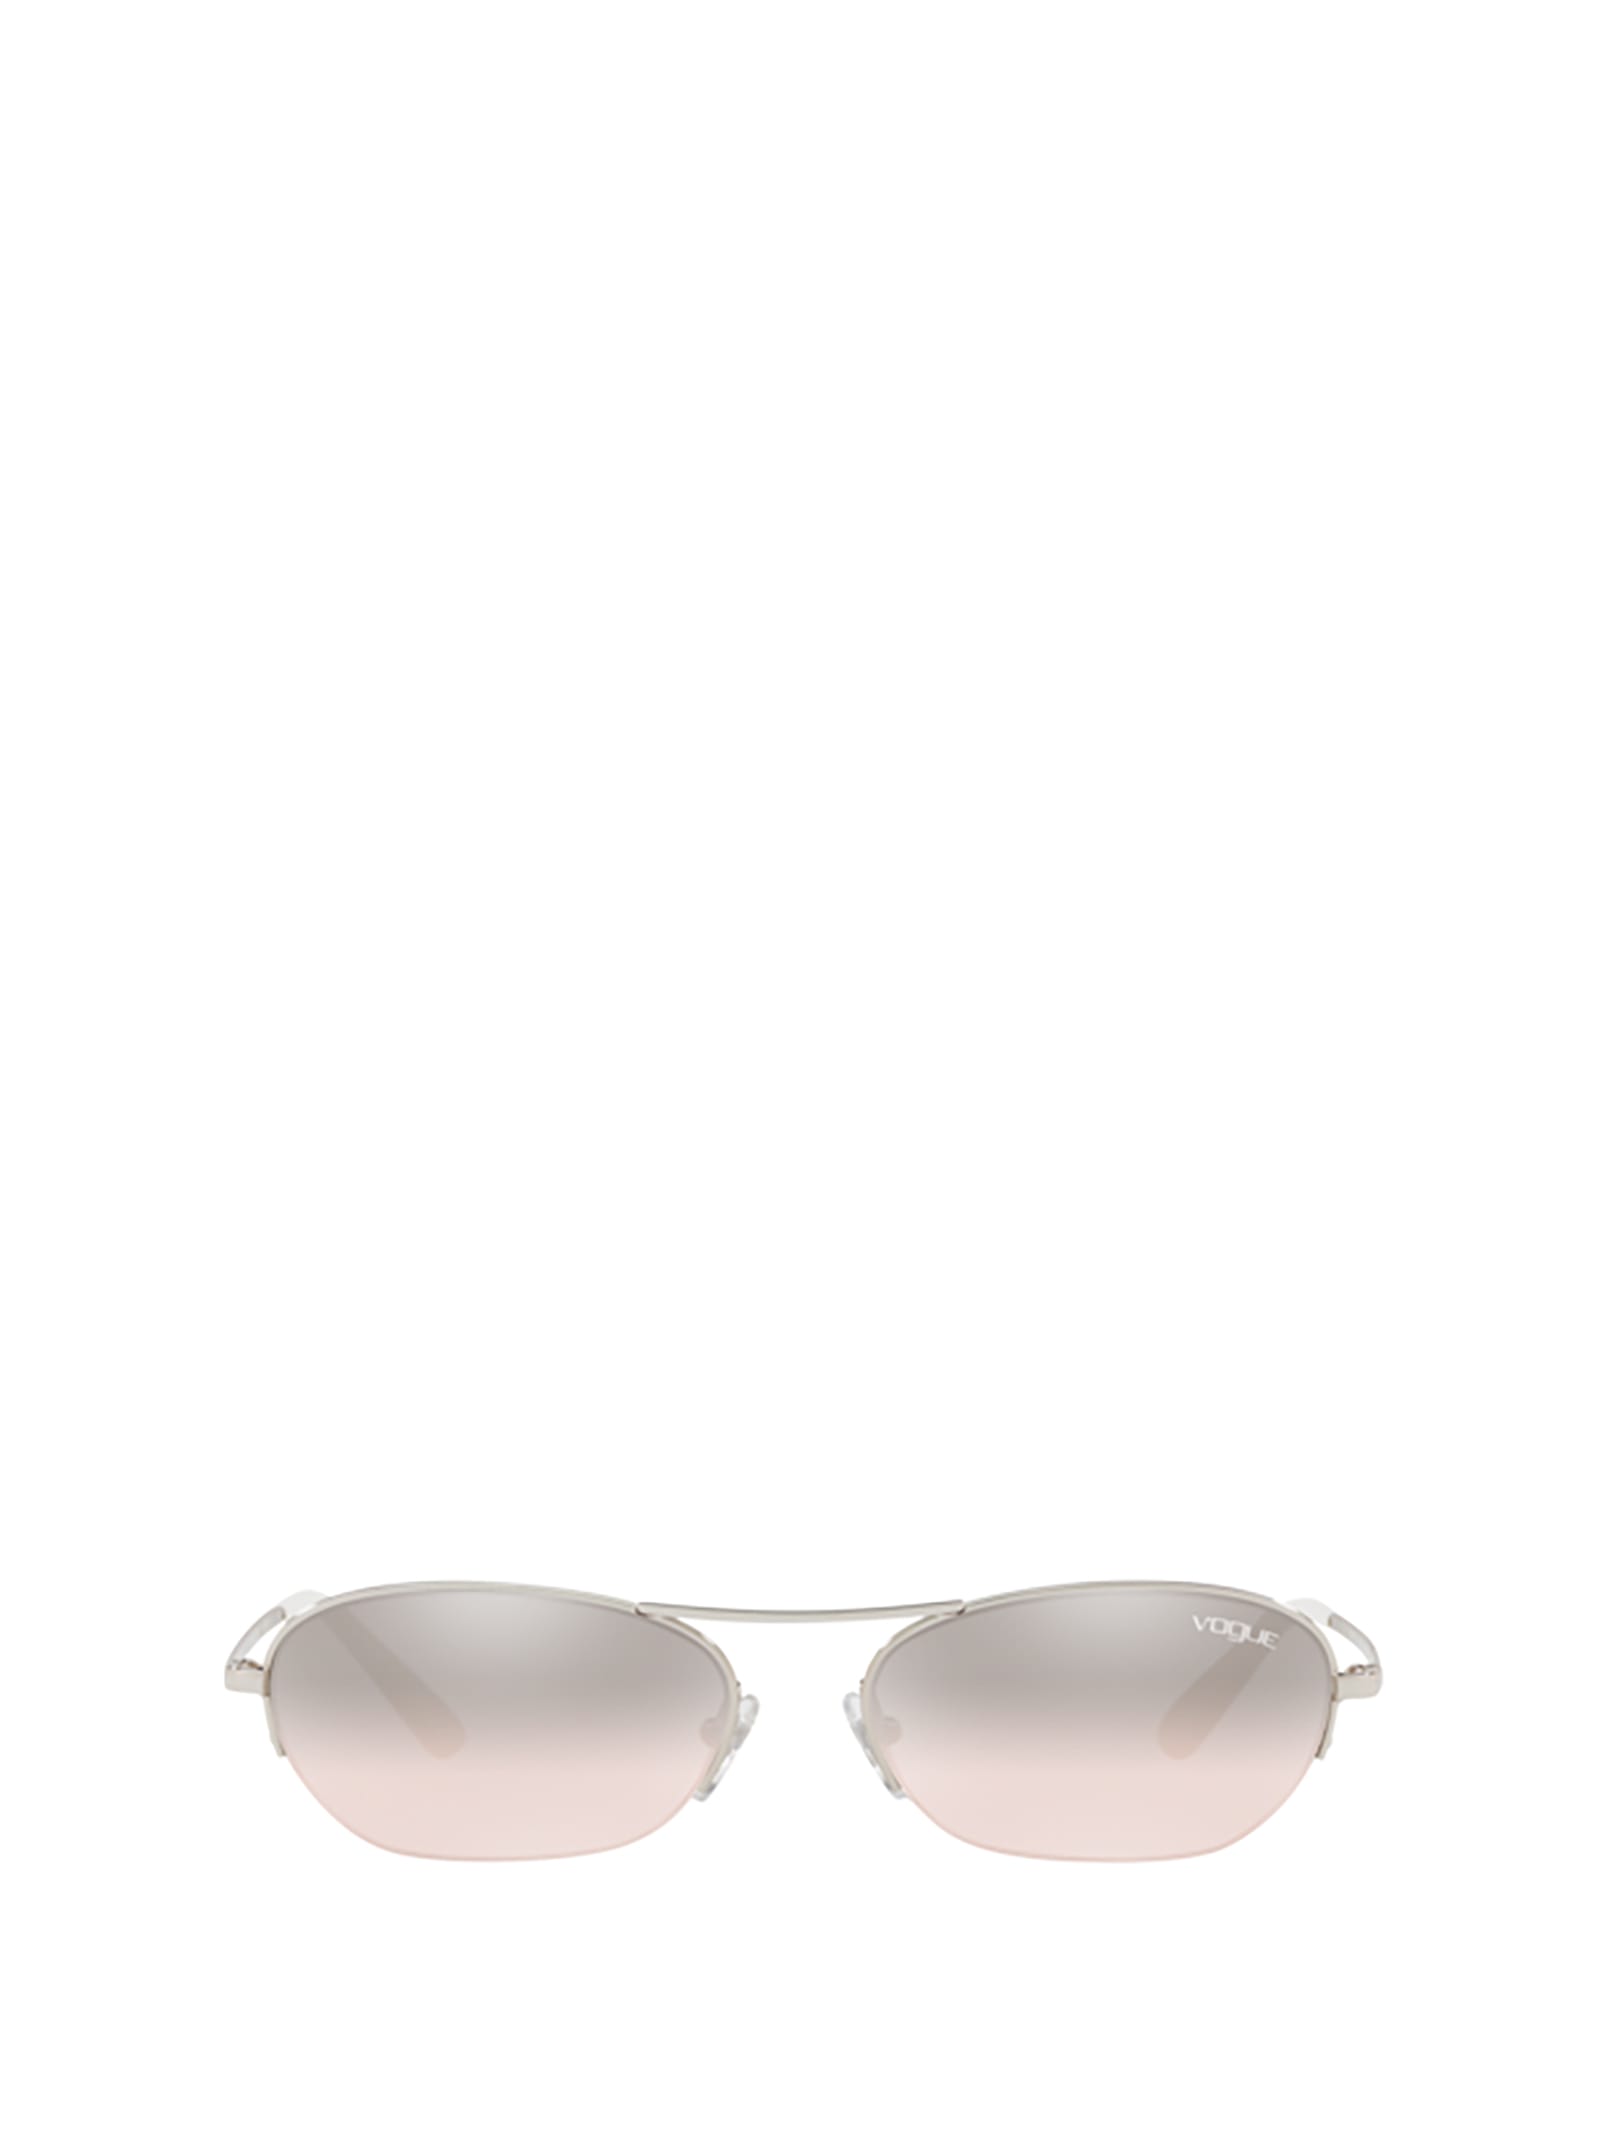 Vogue Eyewear Vogue Vo4107s Silver Sunglasses